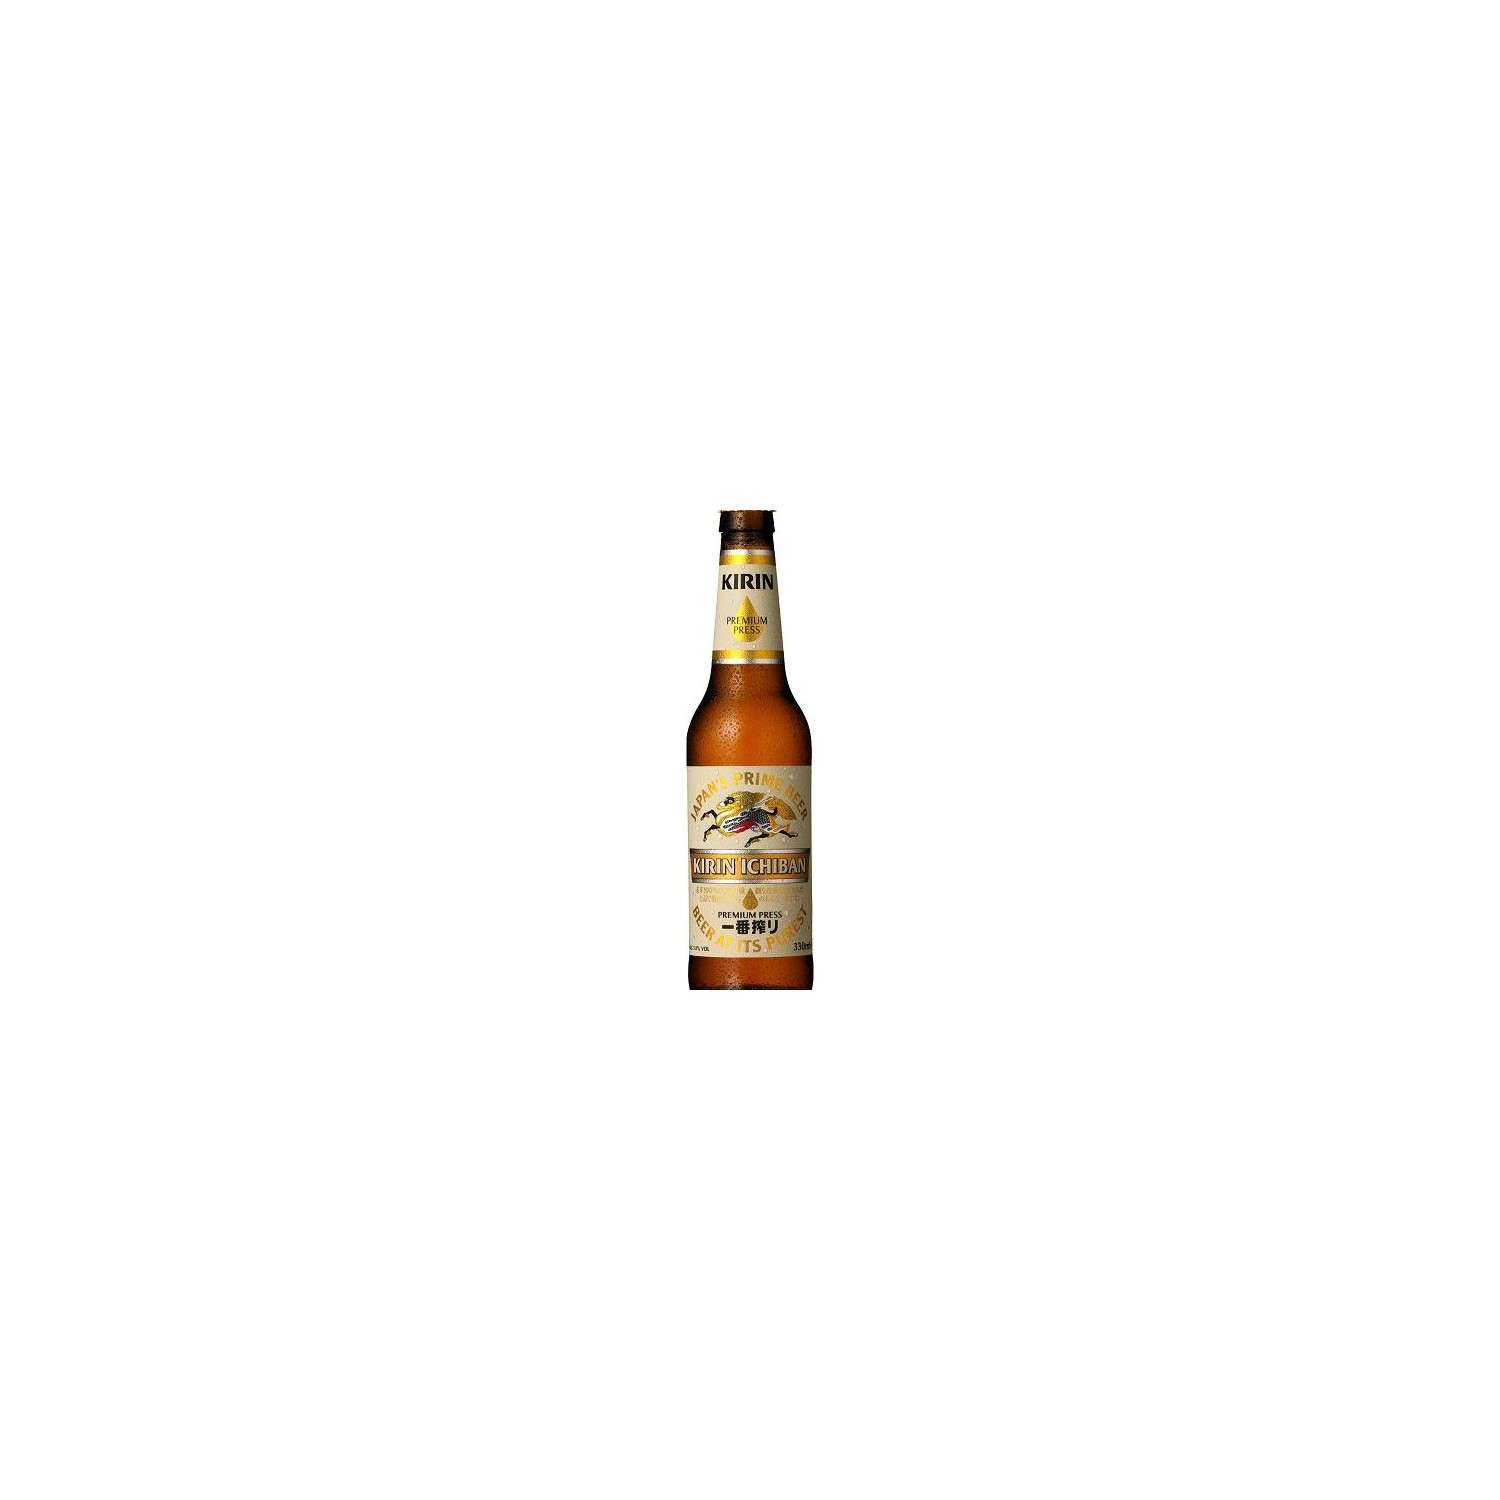 Kirin - 330ml - Kirin Ichiban Beer